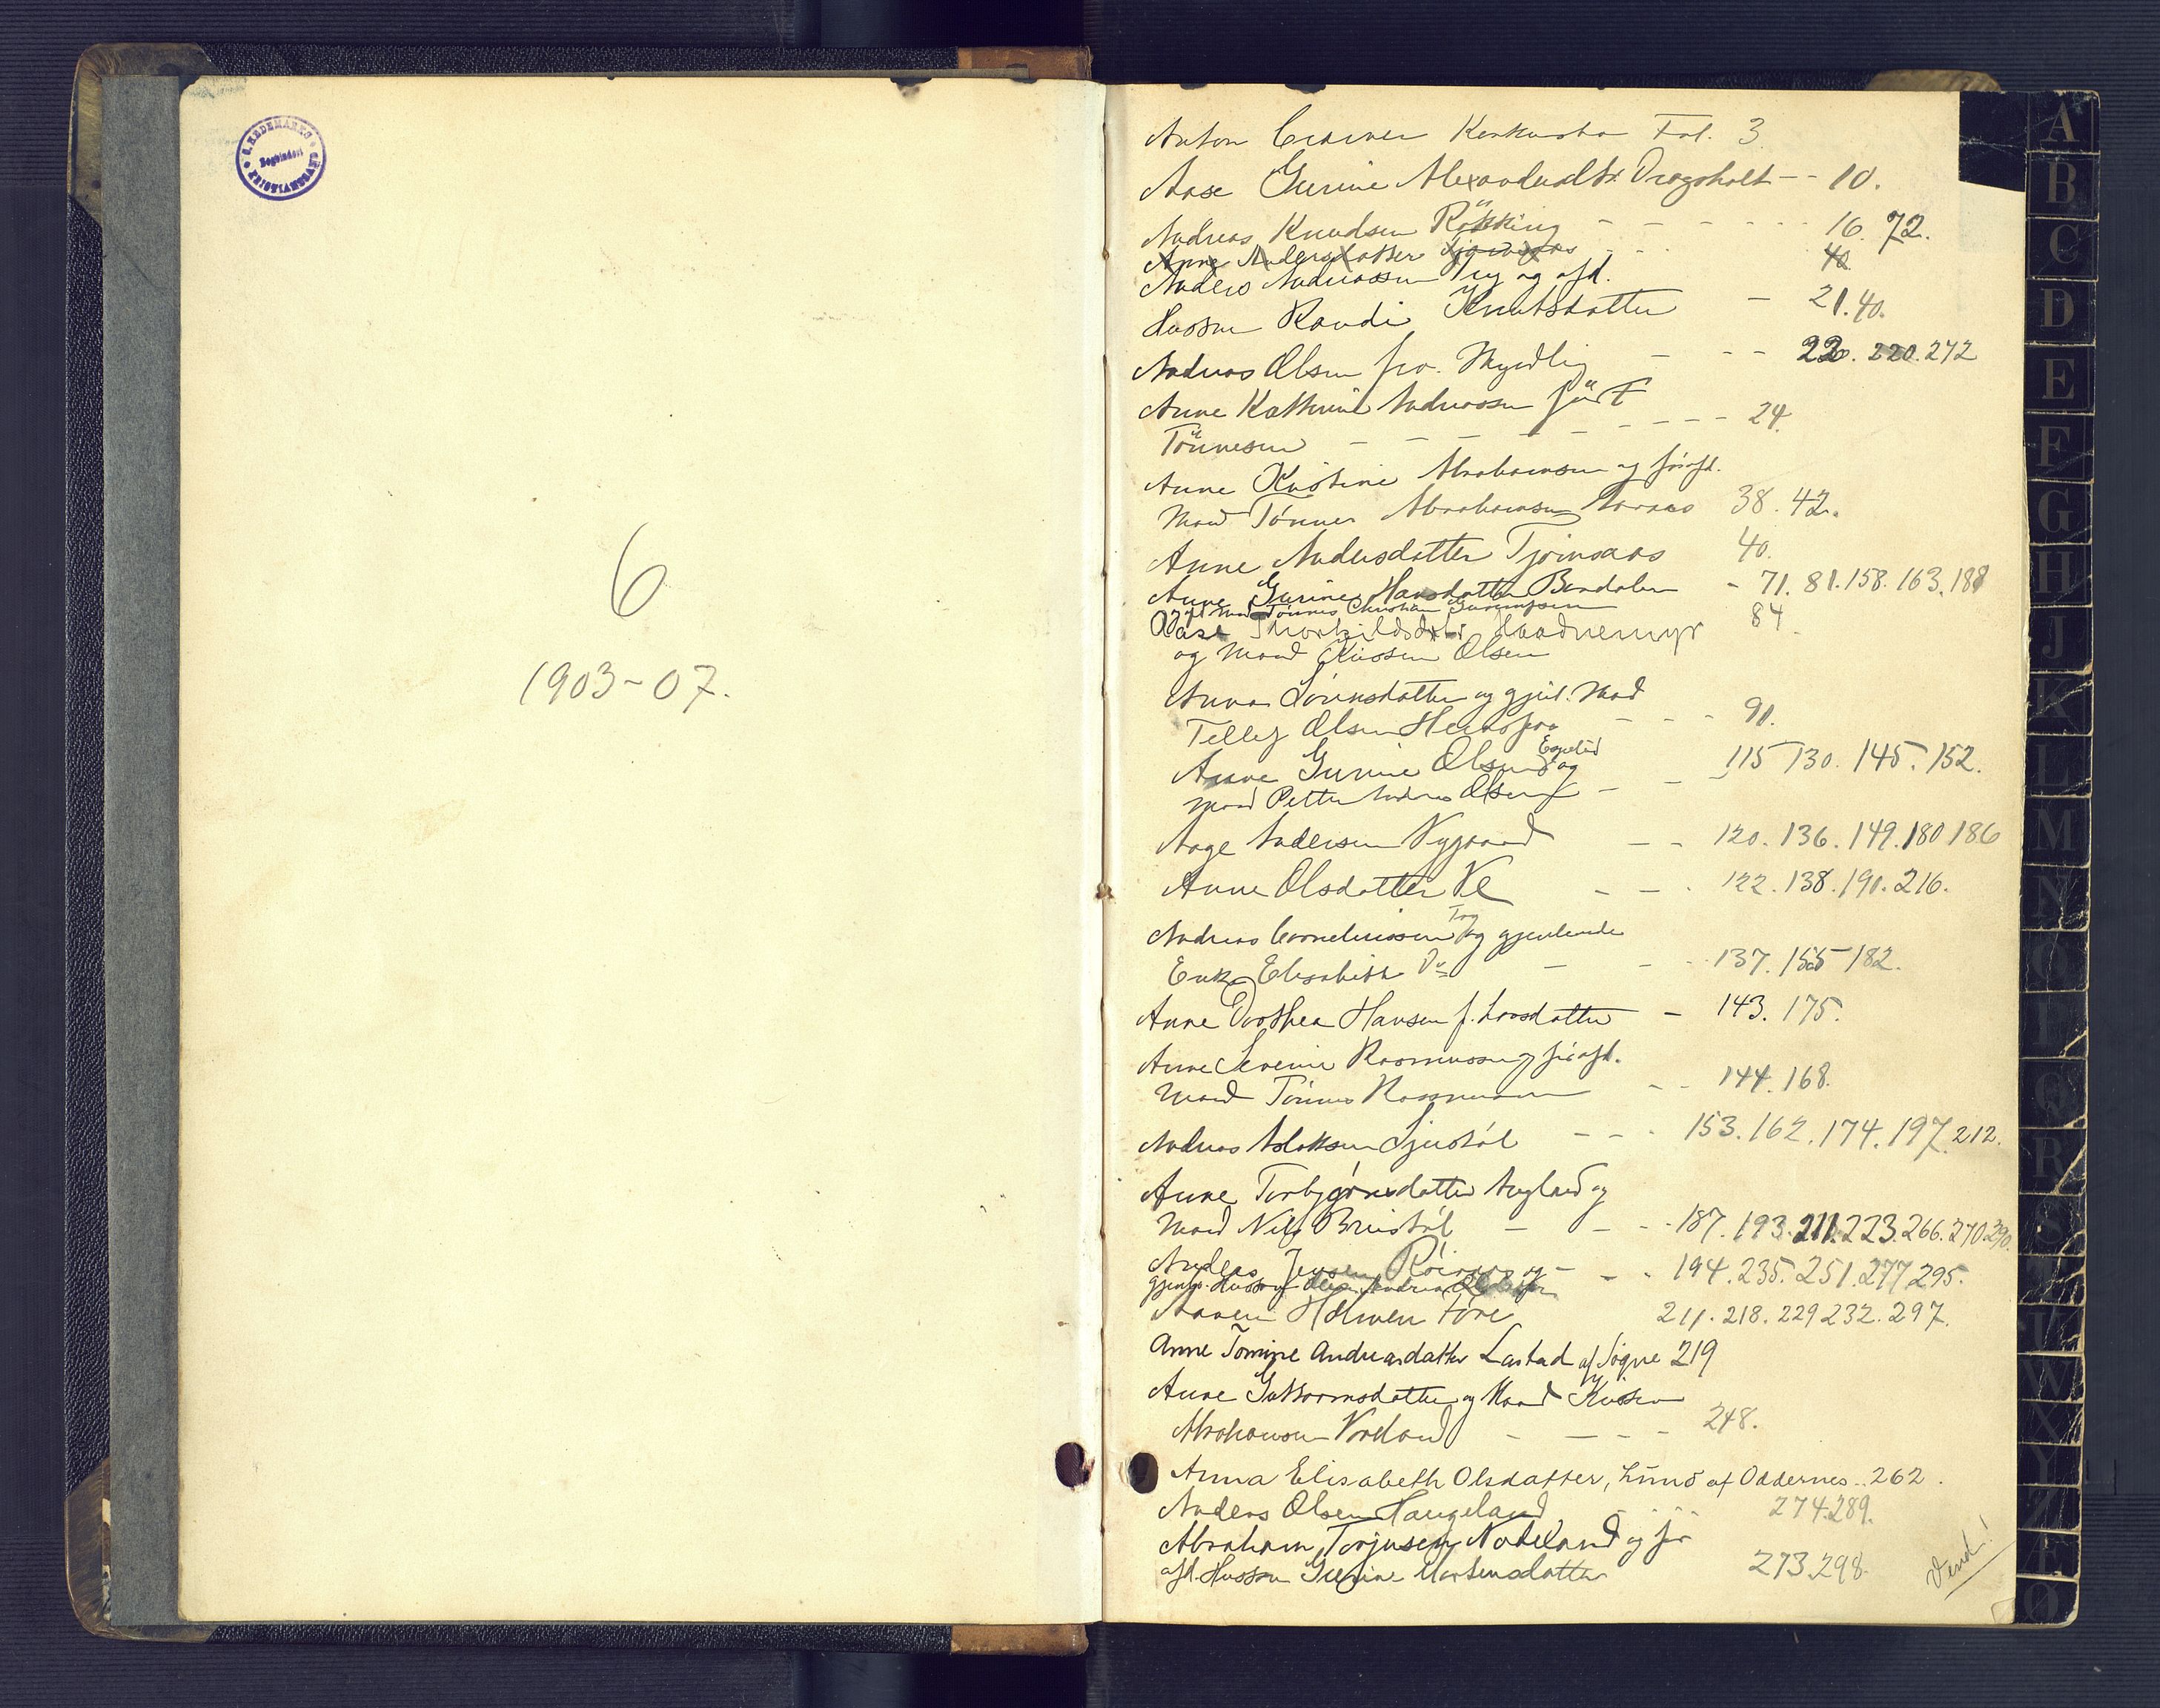 Torridal sorenskriveri, SAK/1221-0012/H/Hc/L0020: Skifteforhandlingsprotokoll med navneregister nr. 6, 1903-1907